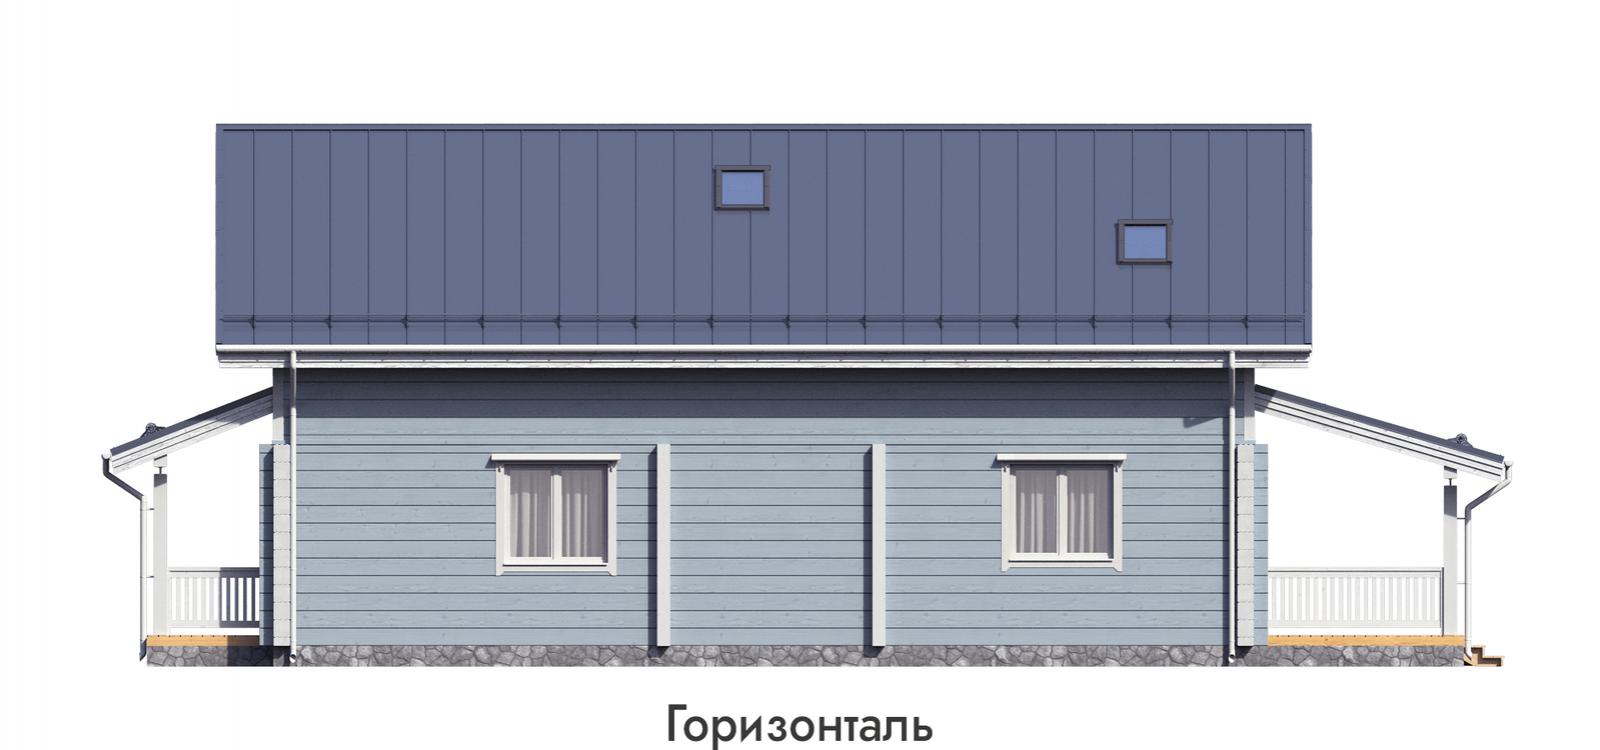 Проект дома «Кирилловское» (фото 15)